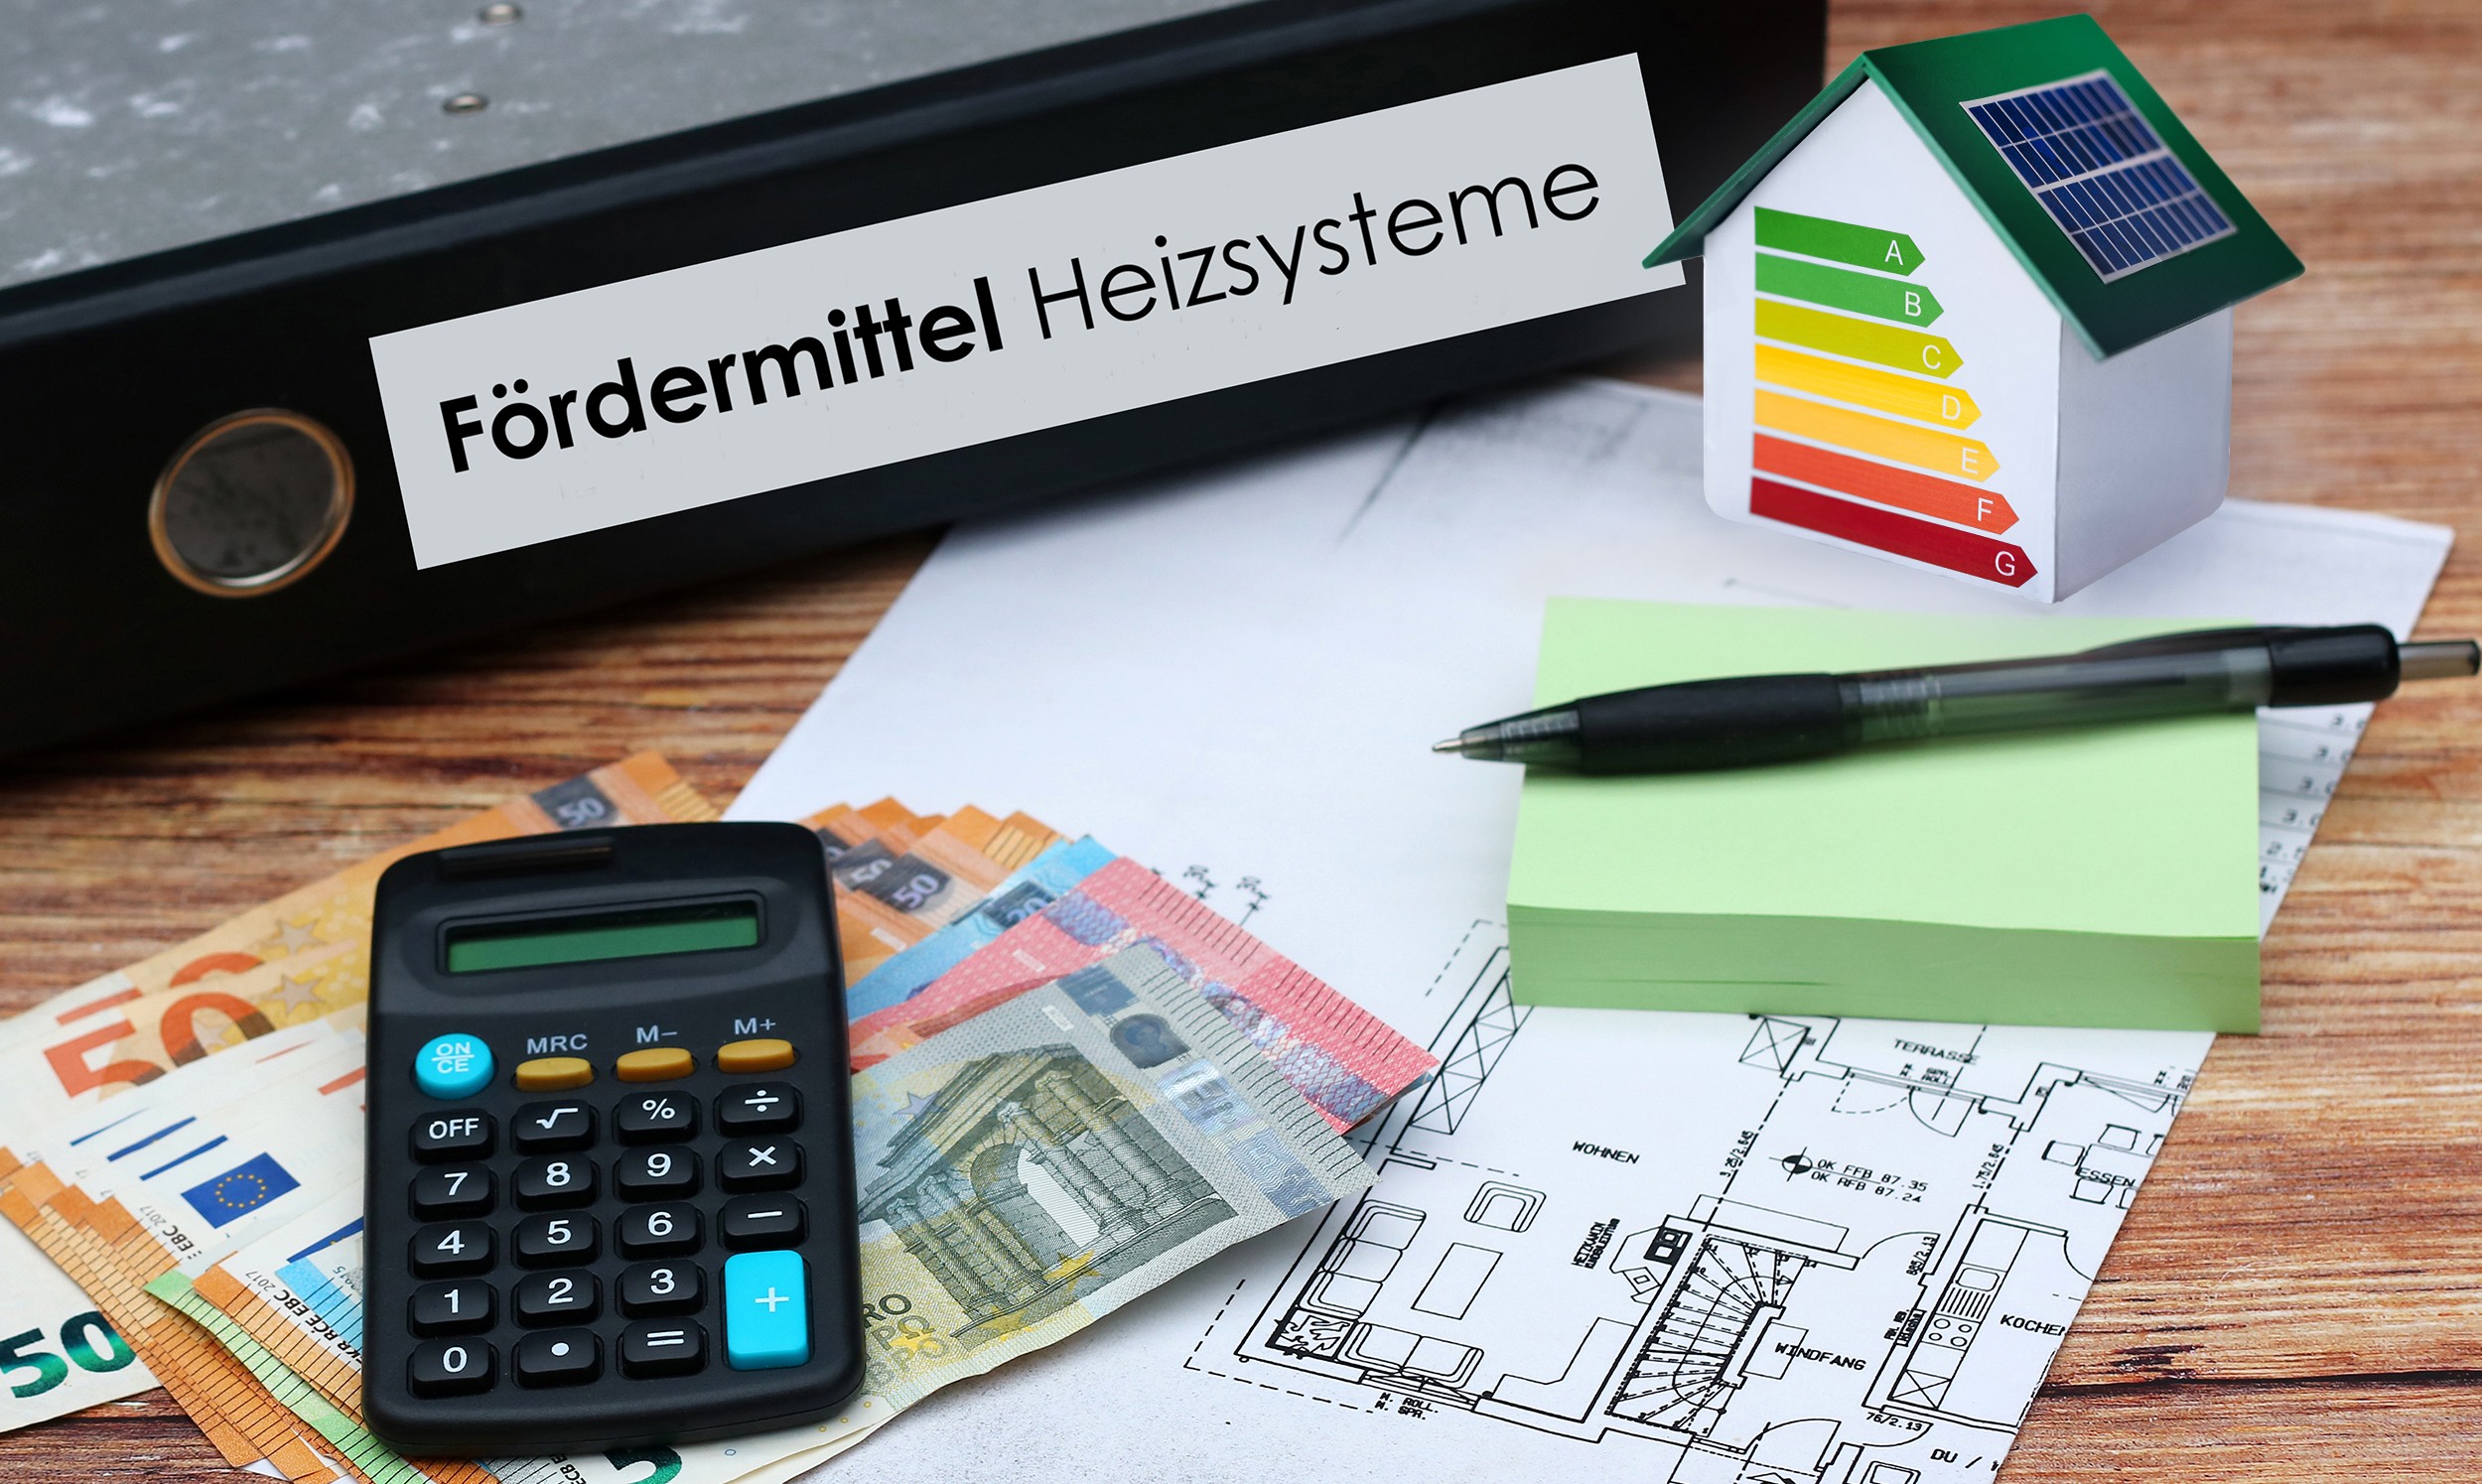 Euro-Geldscheine, Taschenrechner, Bauplan und Aktenordner mit dem Text "Fördermittel Heizsysteme" liegen auf einem Holztisch